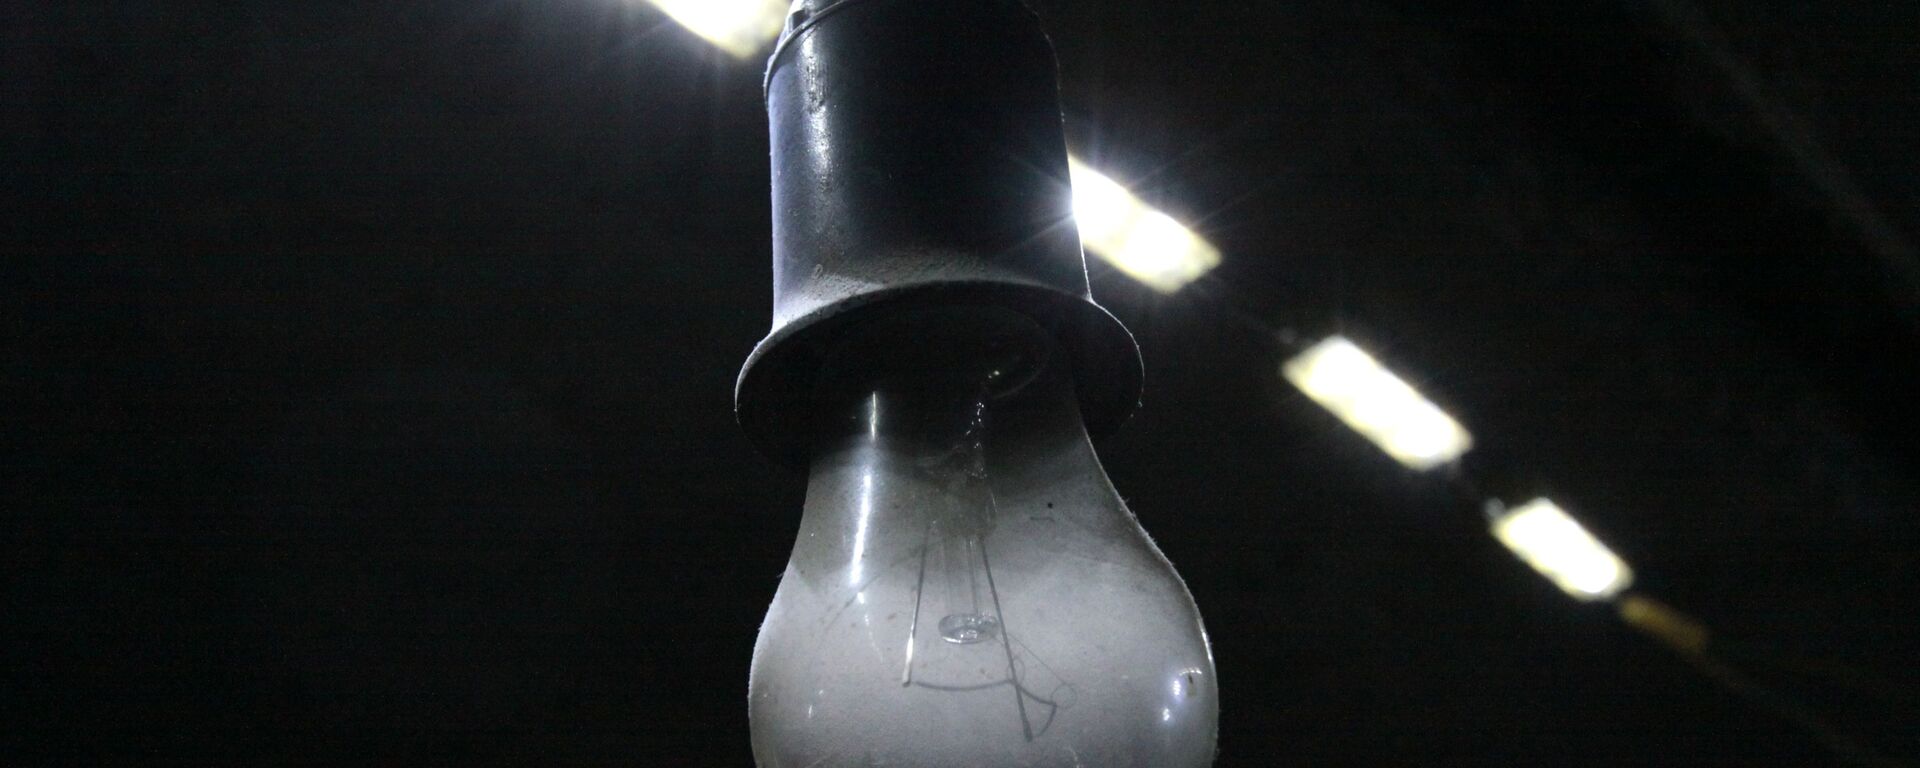 Лампочка в подвале, архивное фото - Sputnik Тоҷикистон, 1920, 24.12.2021